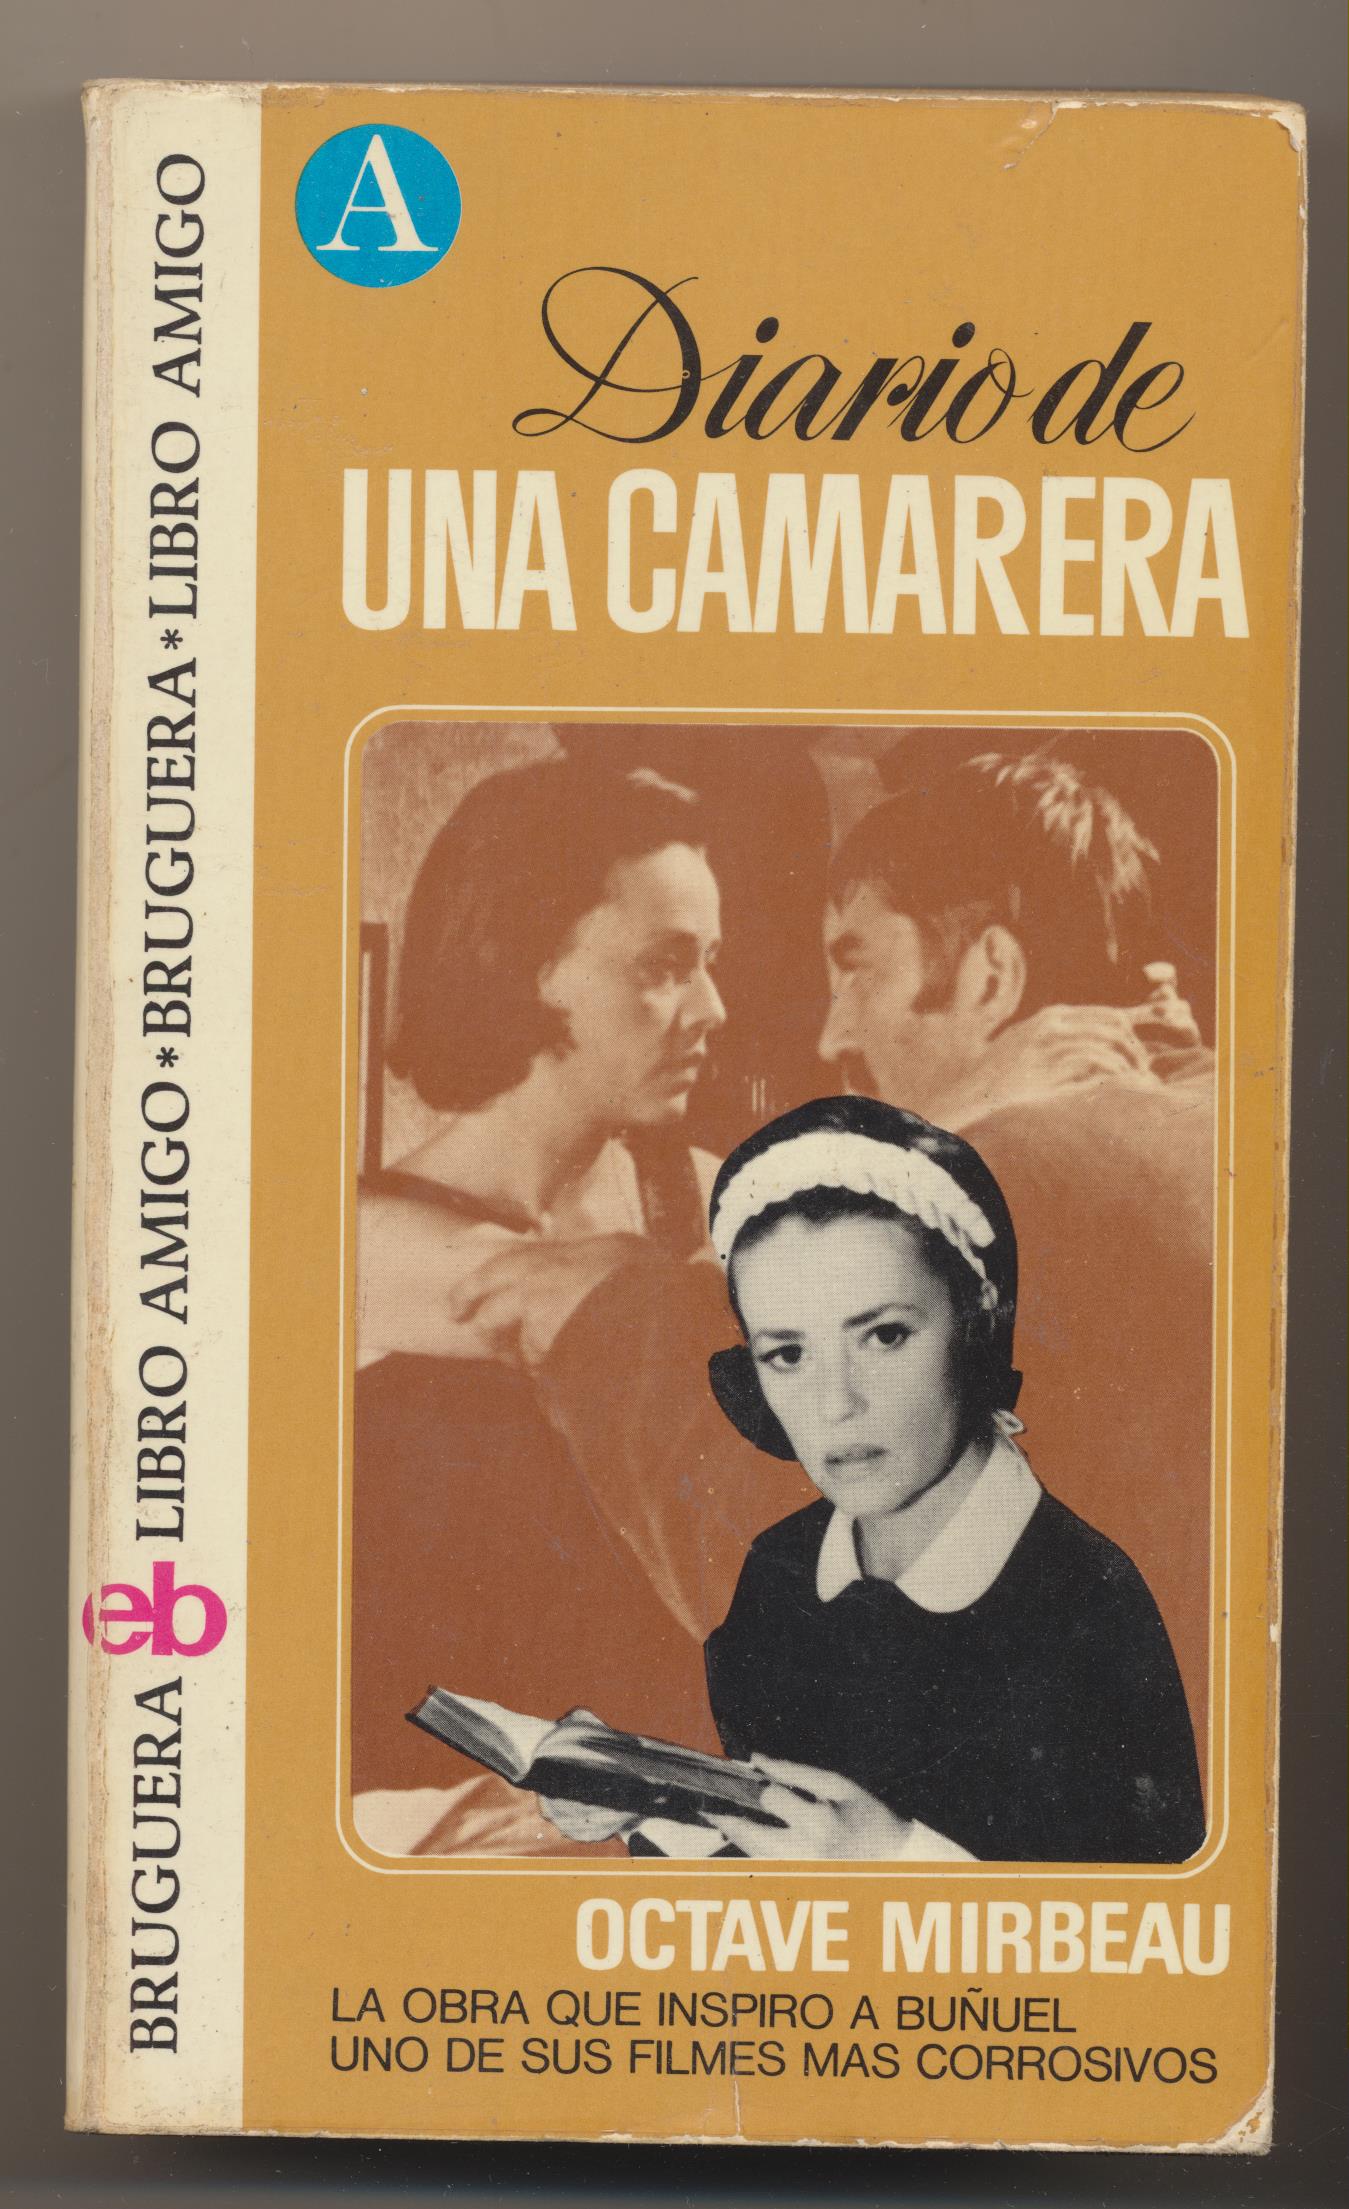 Octave Mirbeau. Diario de una camarera. 1ª Edición Bruguera 1974